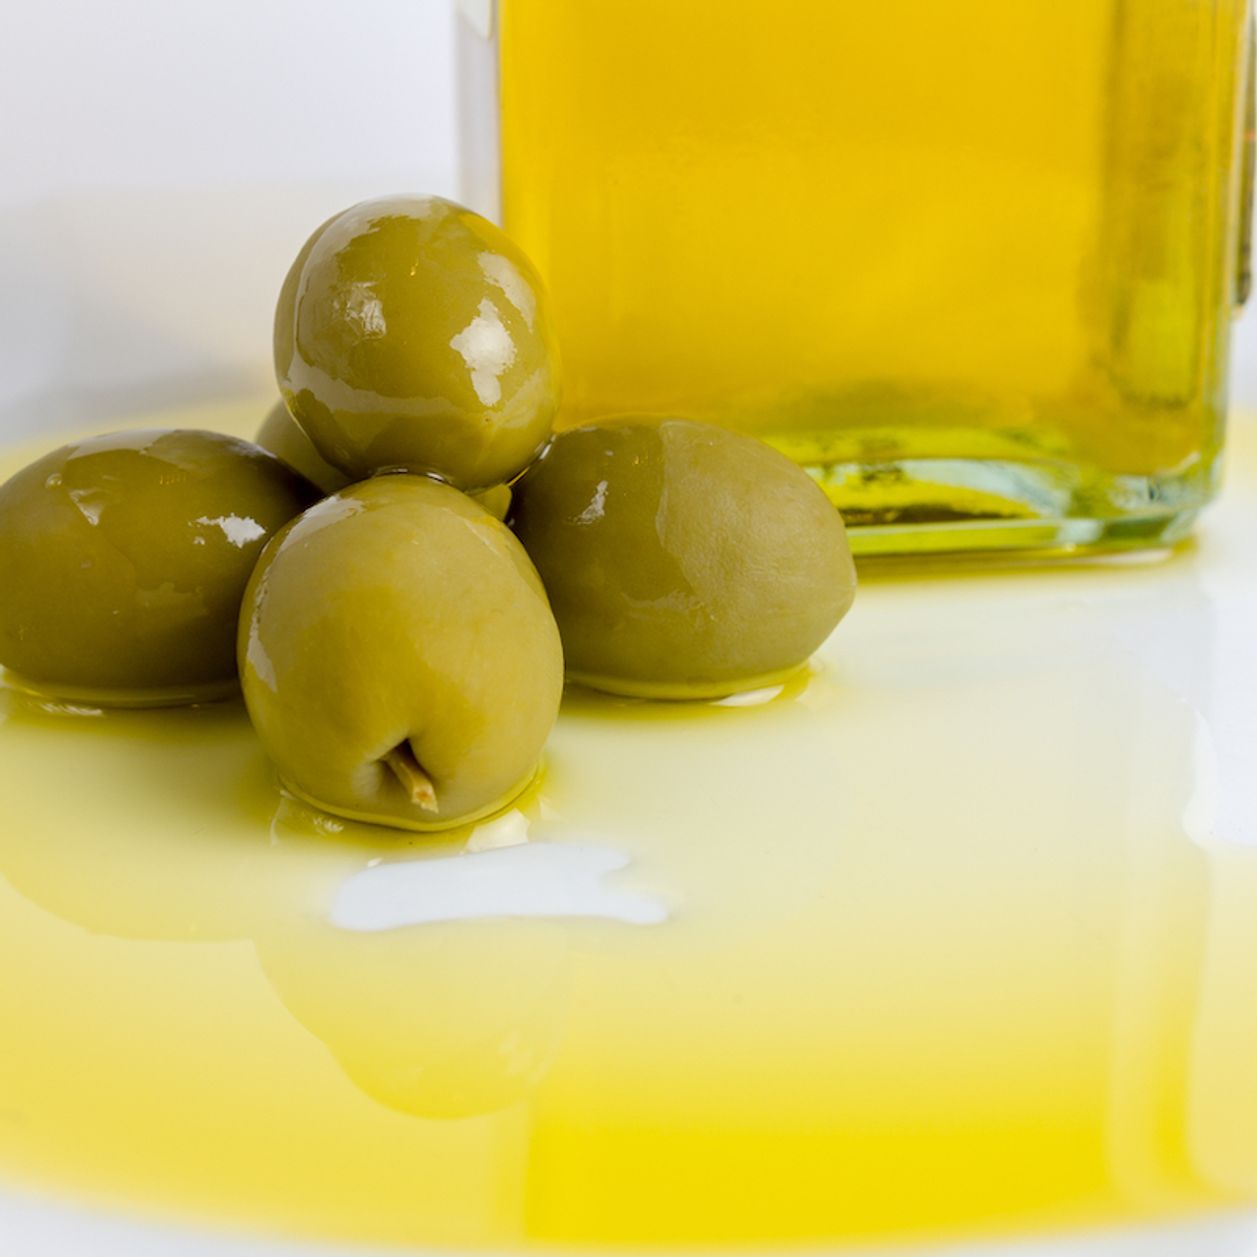 ¡Aceite de oliva virgen extra al rescate! Cómo podría mejorar la salud de mujeres con obesidad y prediabetes